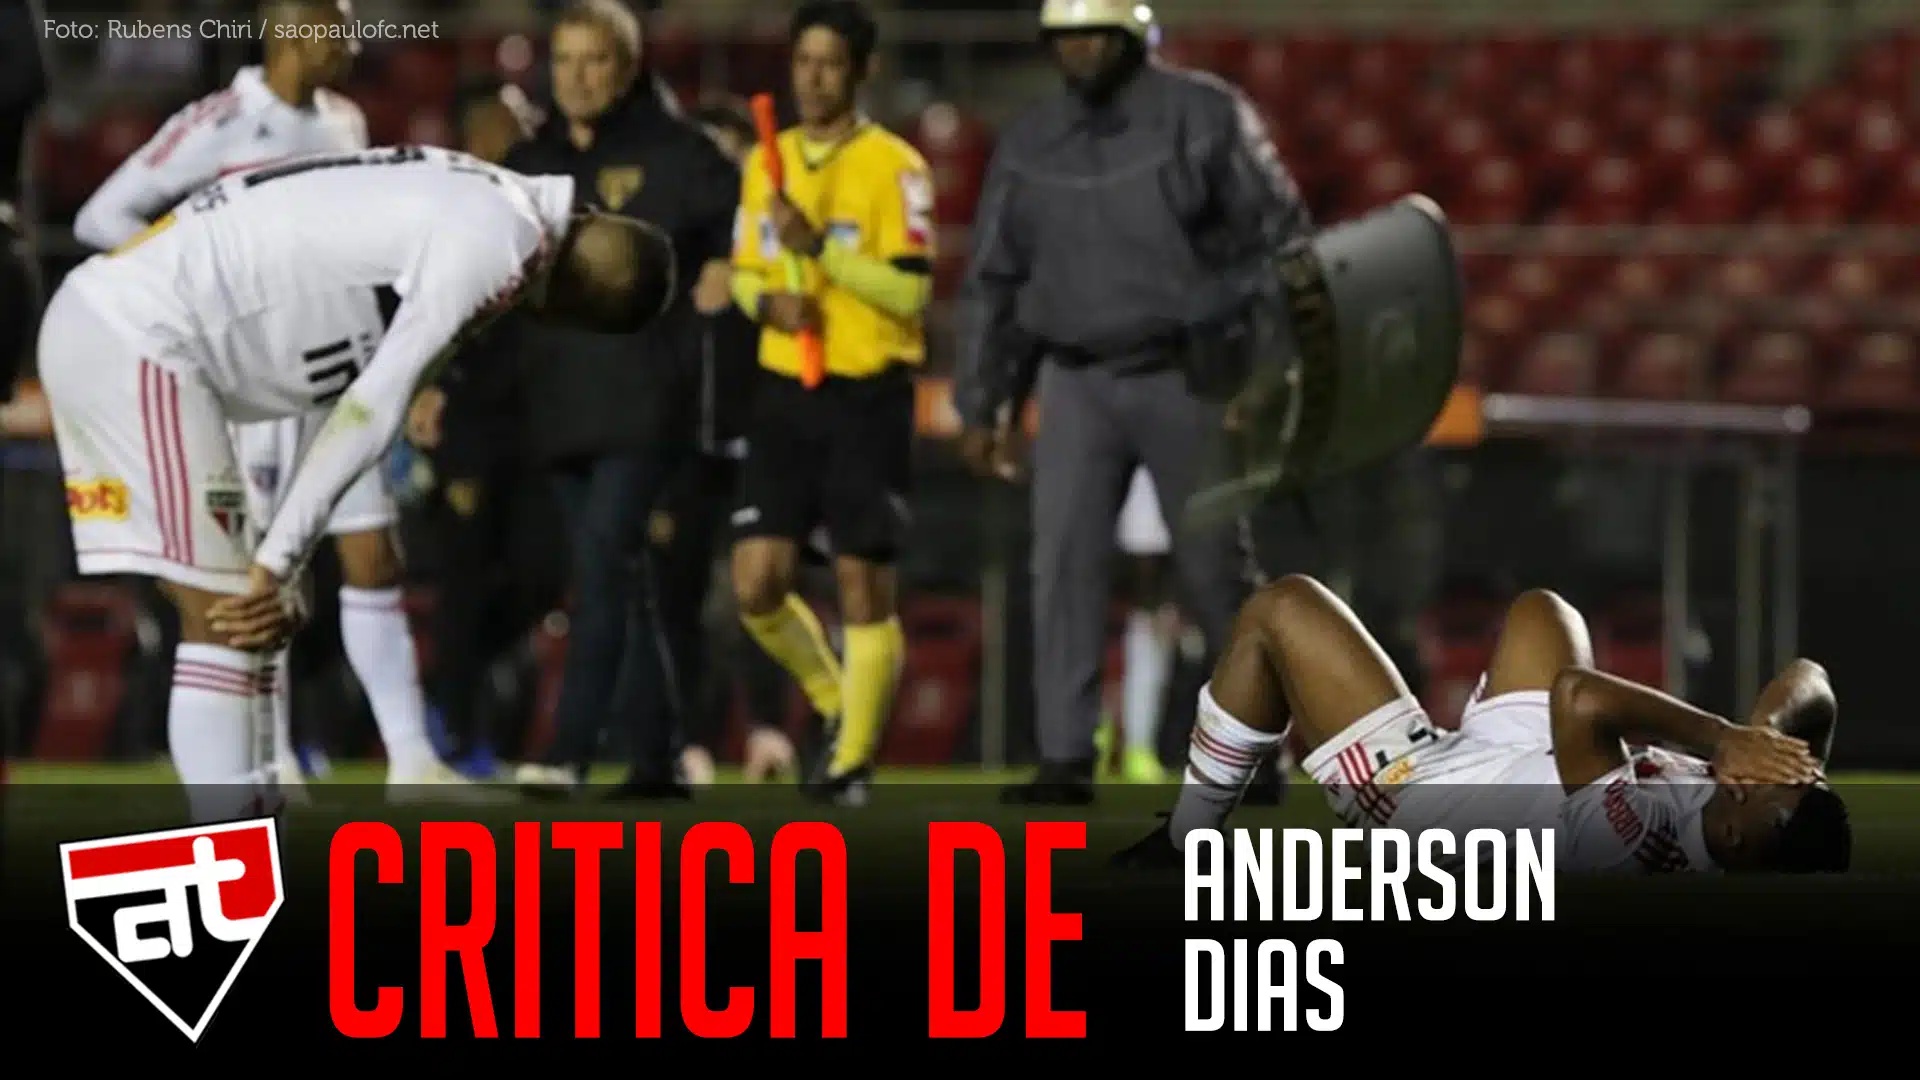 Critica Anderson Dias 1 | Arquibancada Tricolor